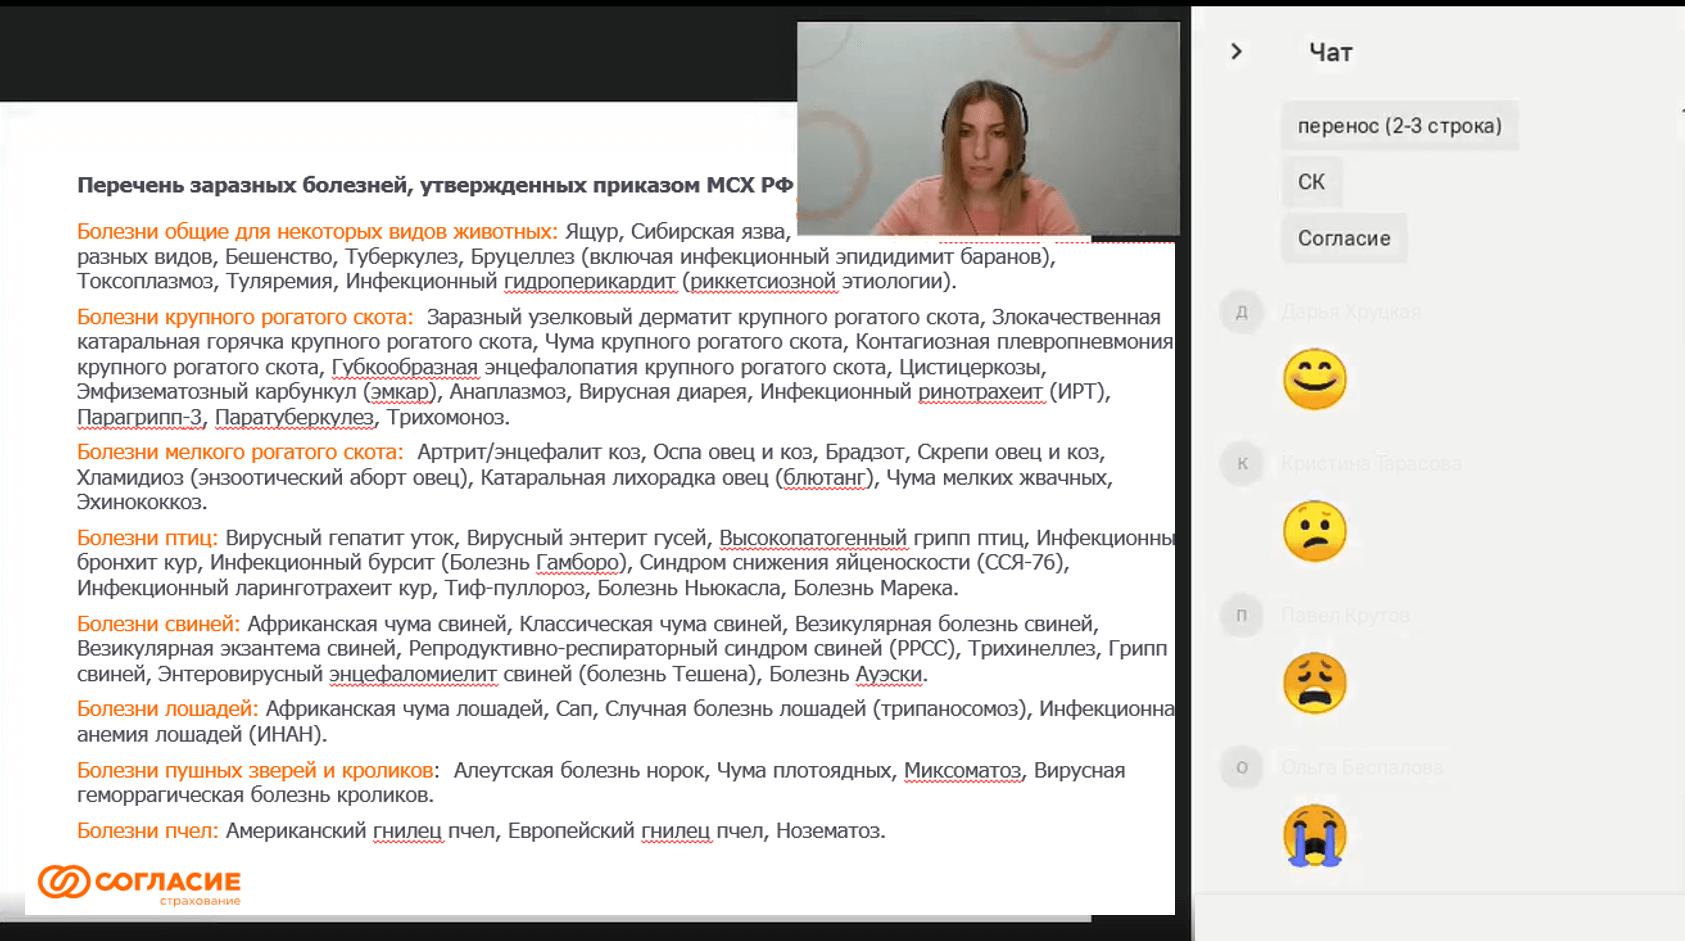 Как страховая компания «Согласие» обучила созданию презентаций более 700 сотрудников со всей России с помощью платформы Webinar | Фото image9